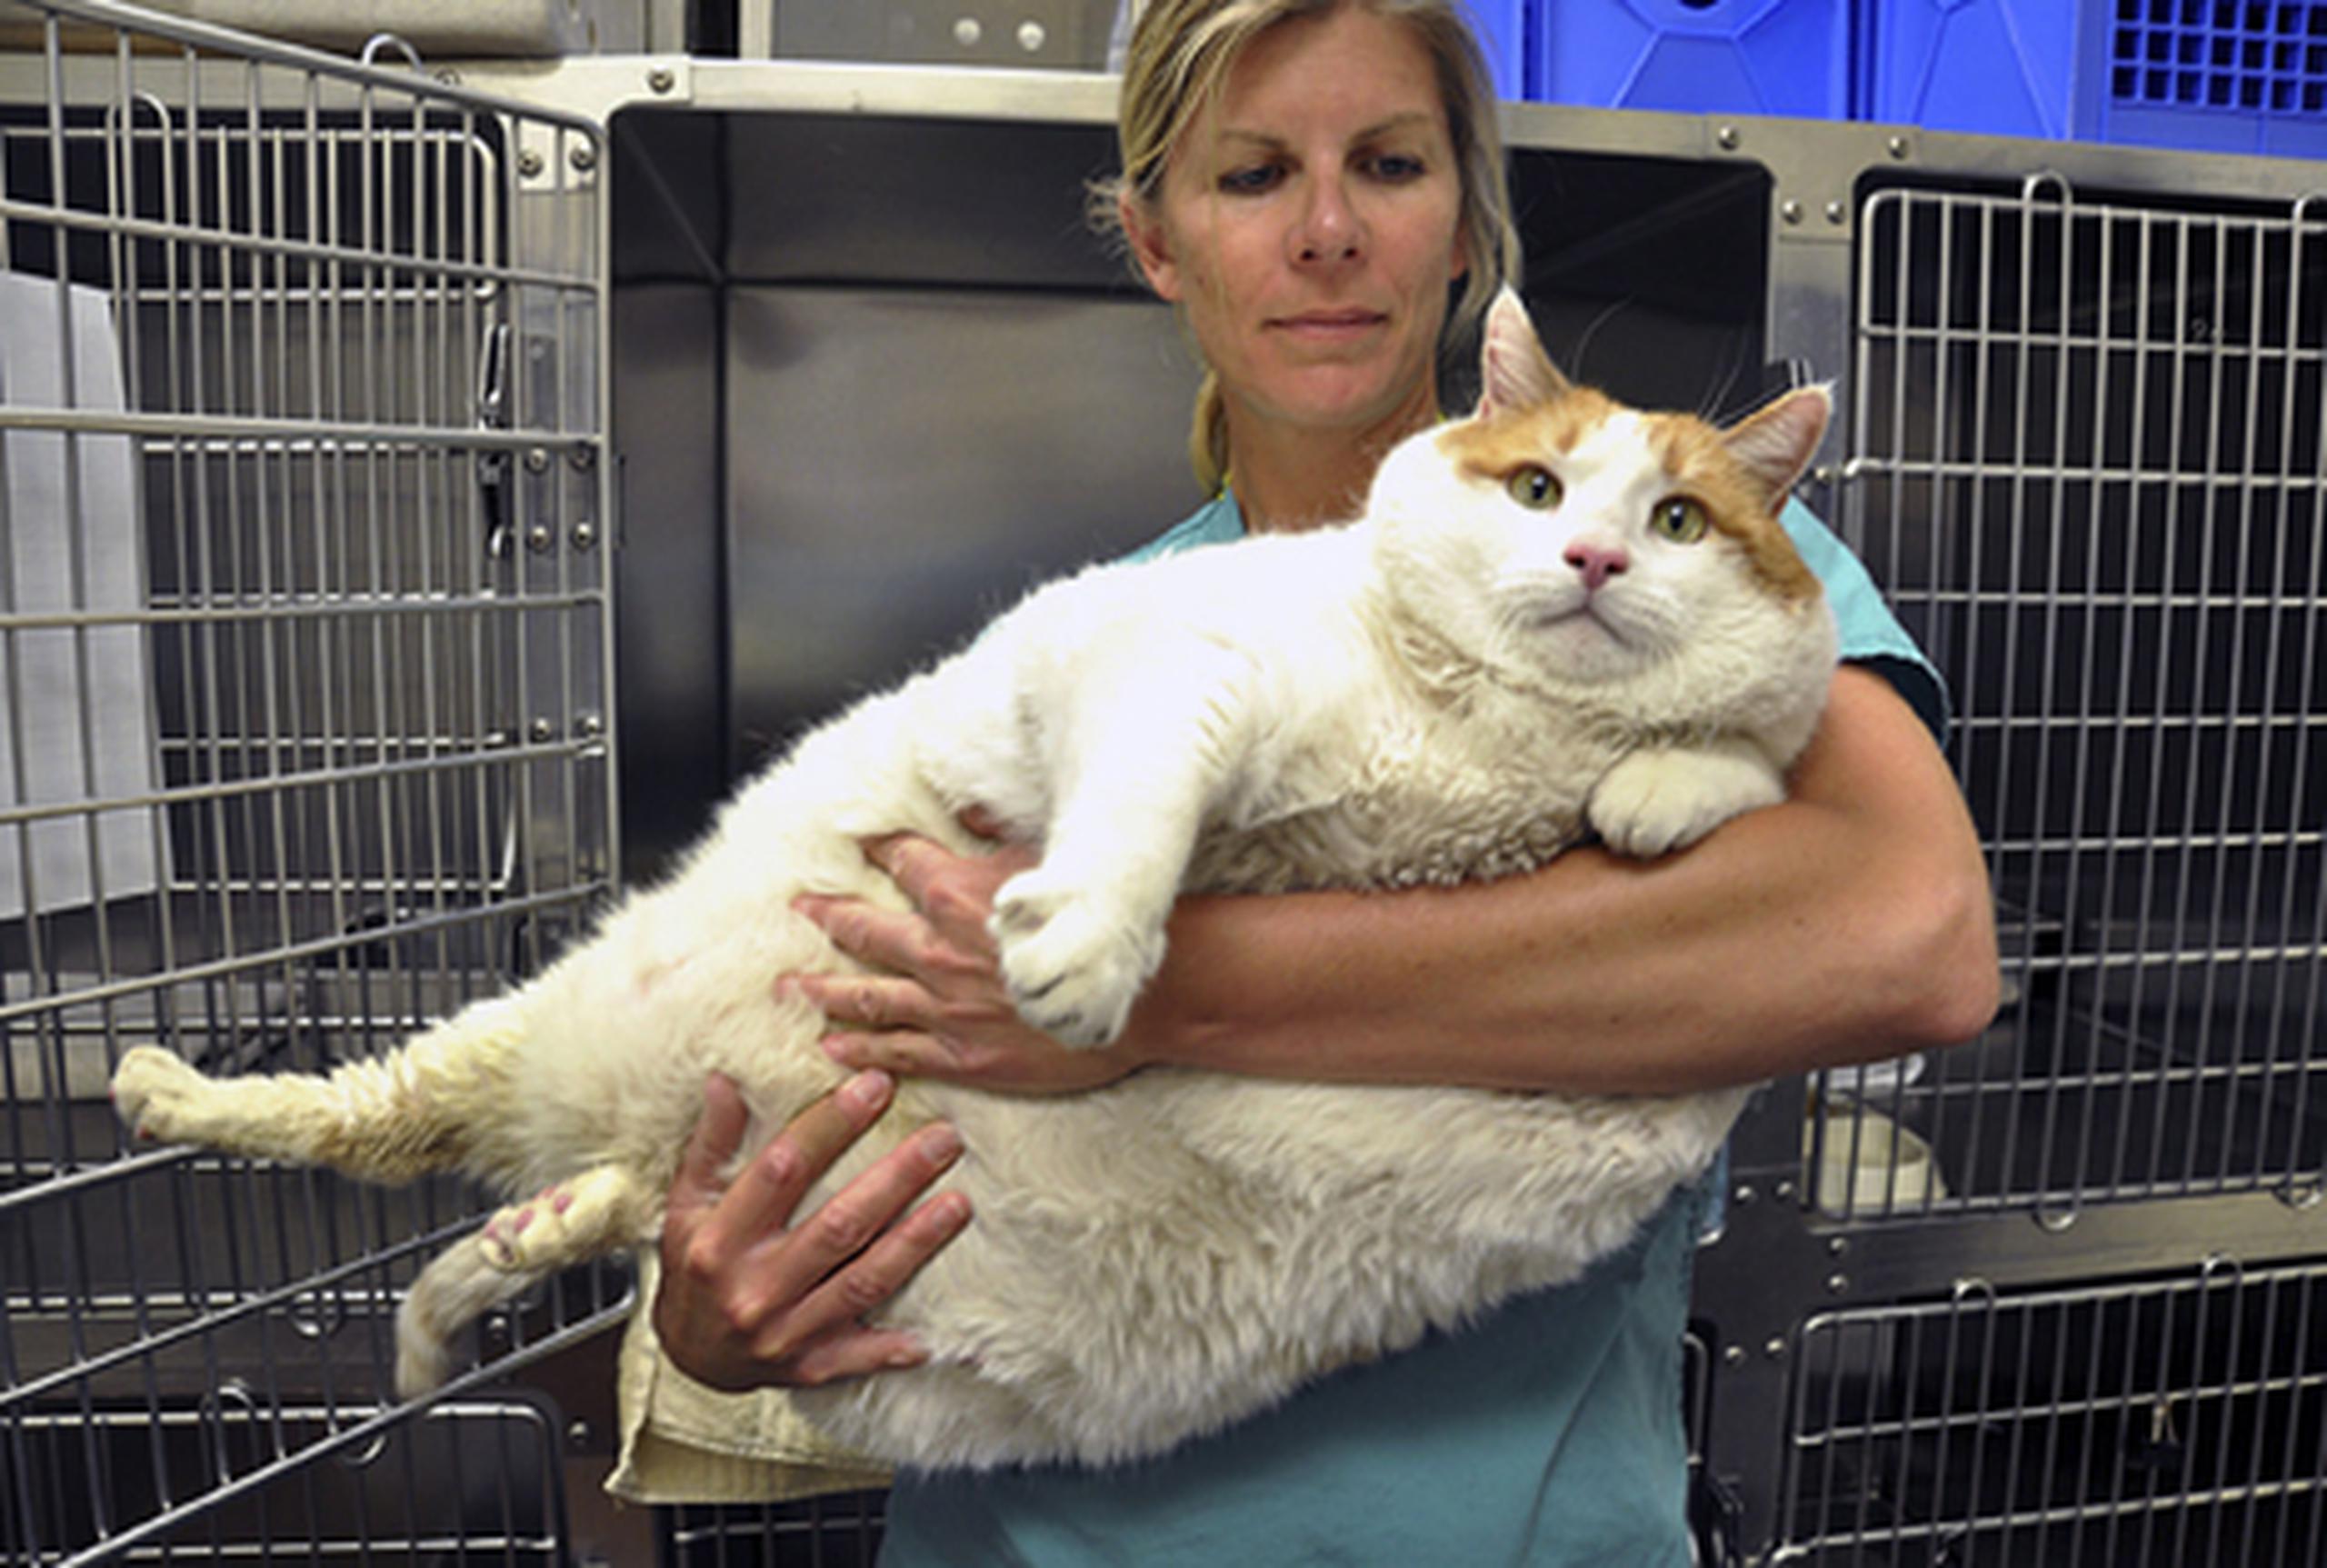 Meow había perdido dos libras y se encontraba en buen estado de salud antes de empezar a presentar problemas respiratorios el miércoles. (Prensa Asociada)